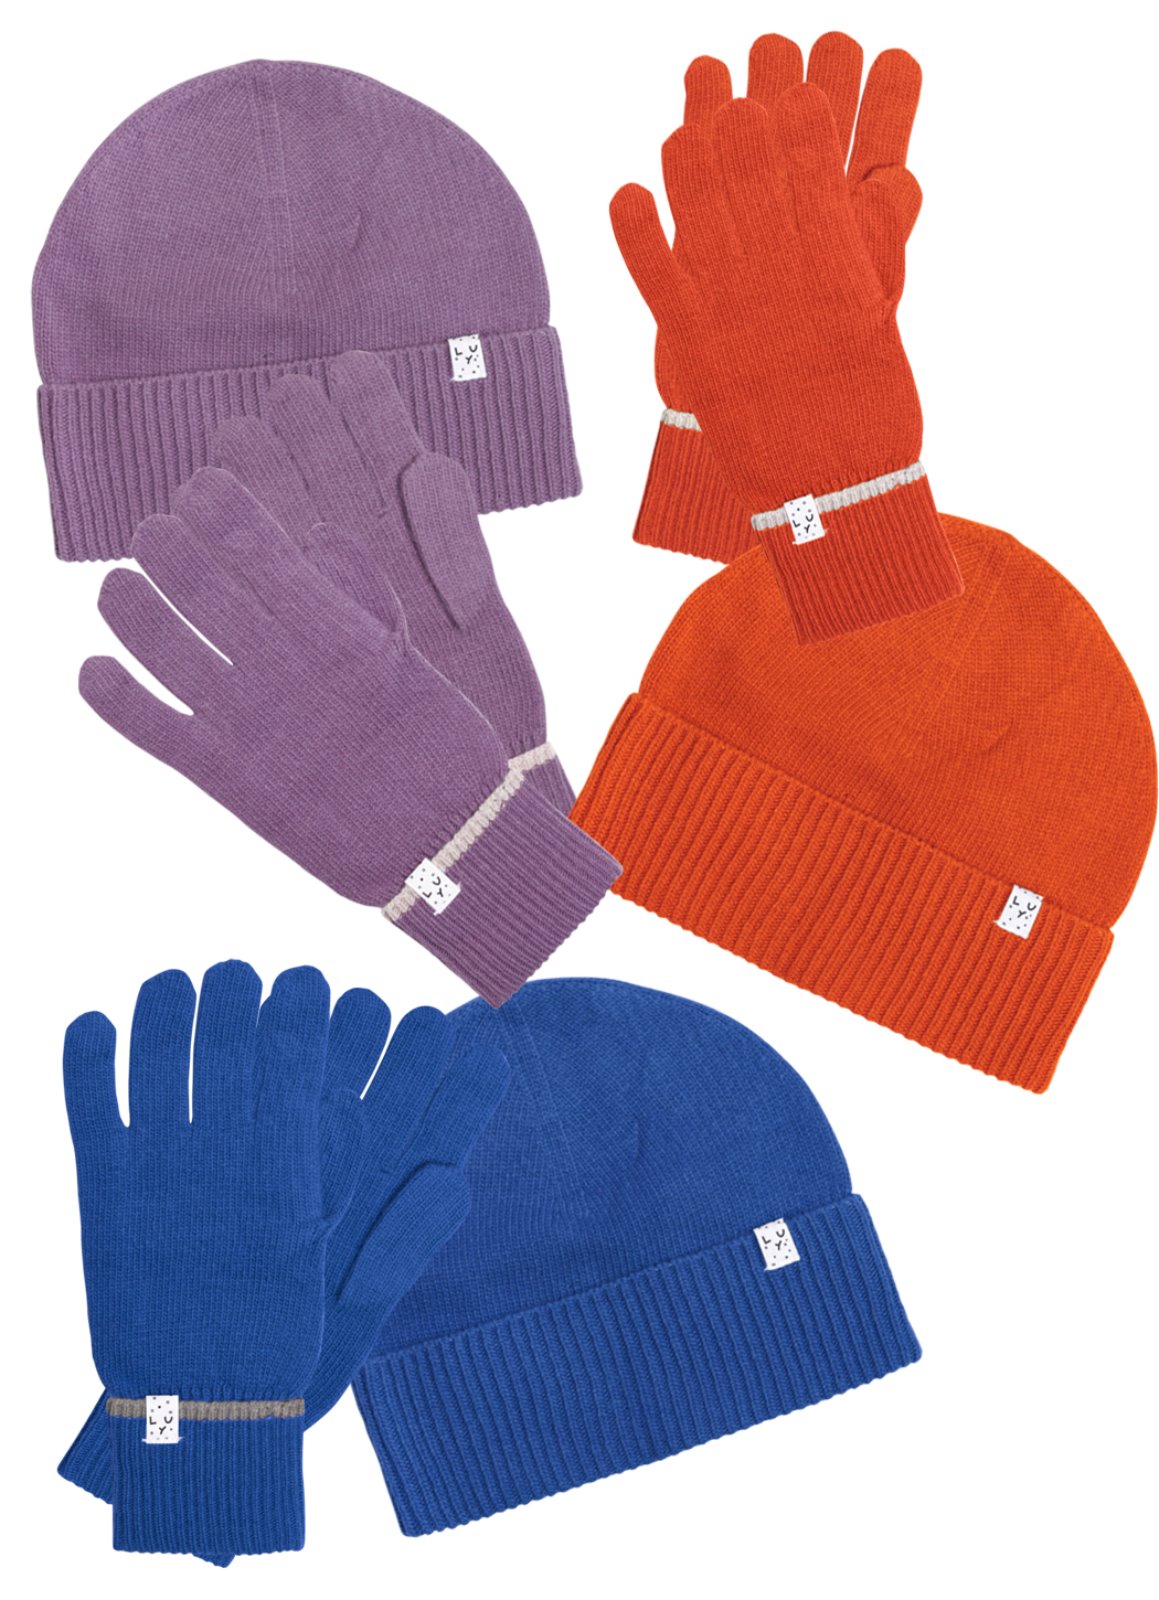 WG.Knit Beanie &amp; Gloves set  Orange / Blue / purple  [45,000 -&gt; 25,000]